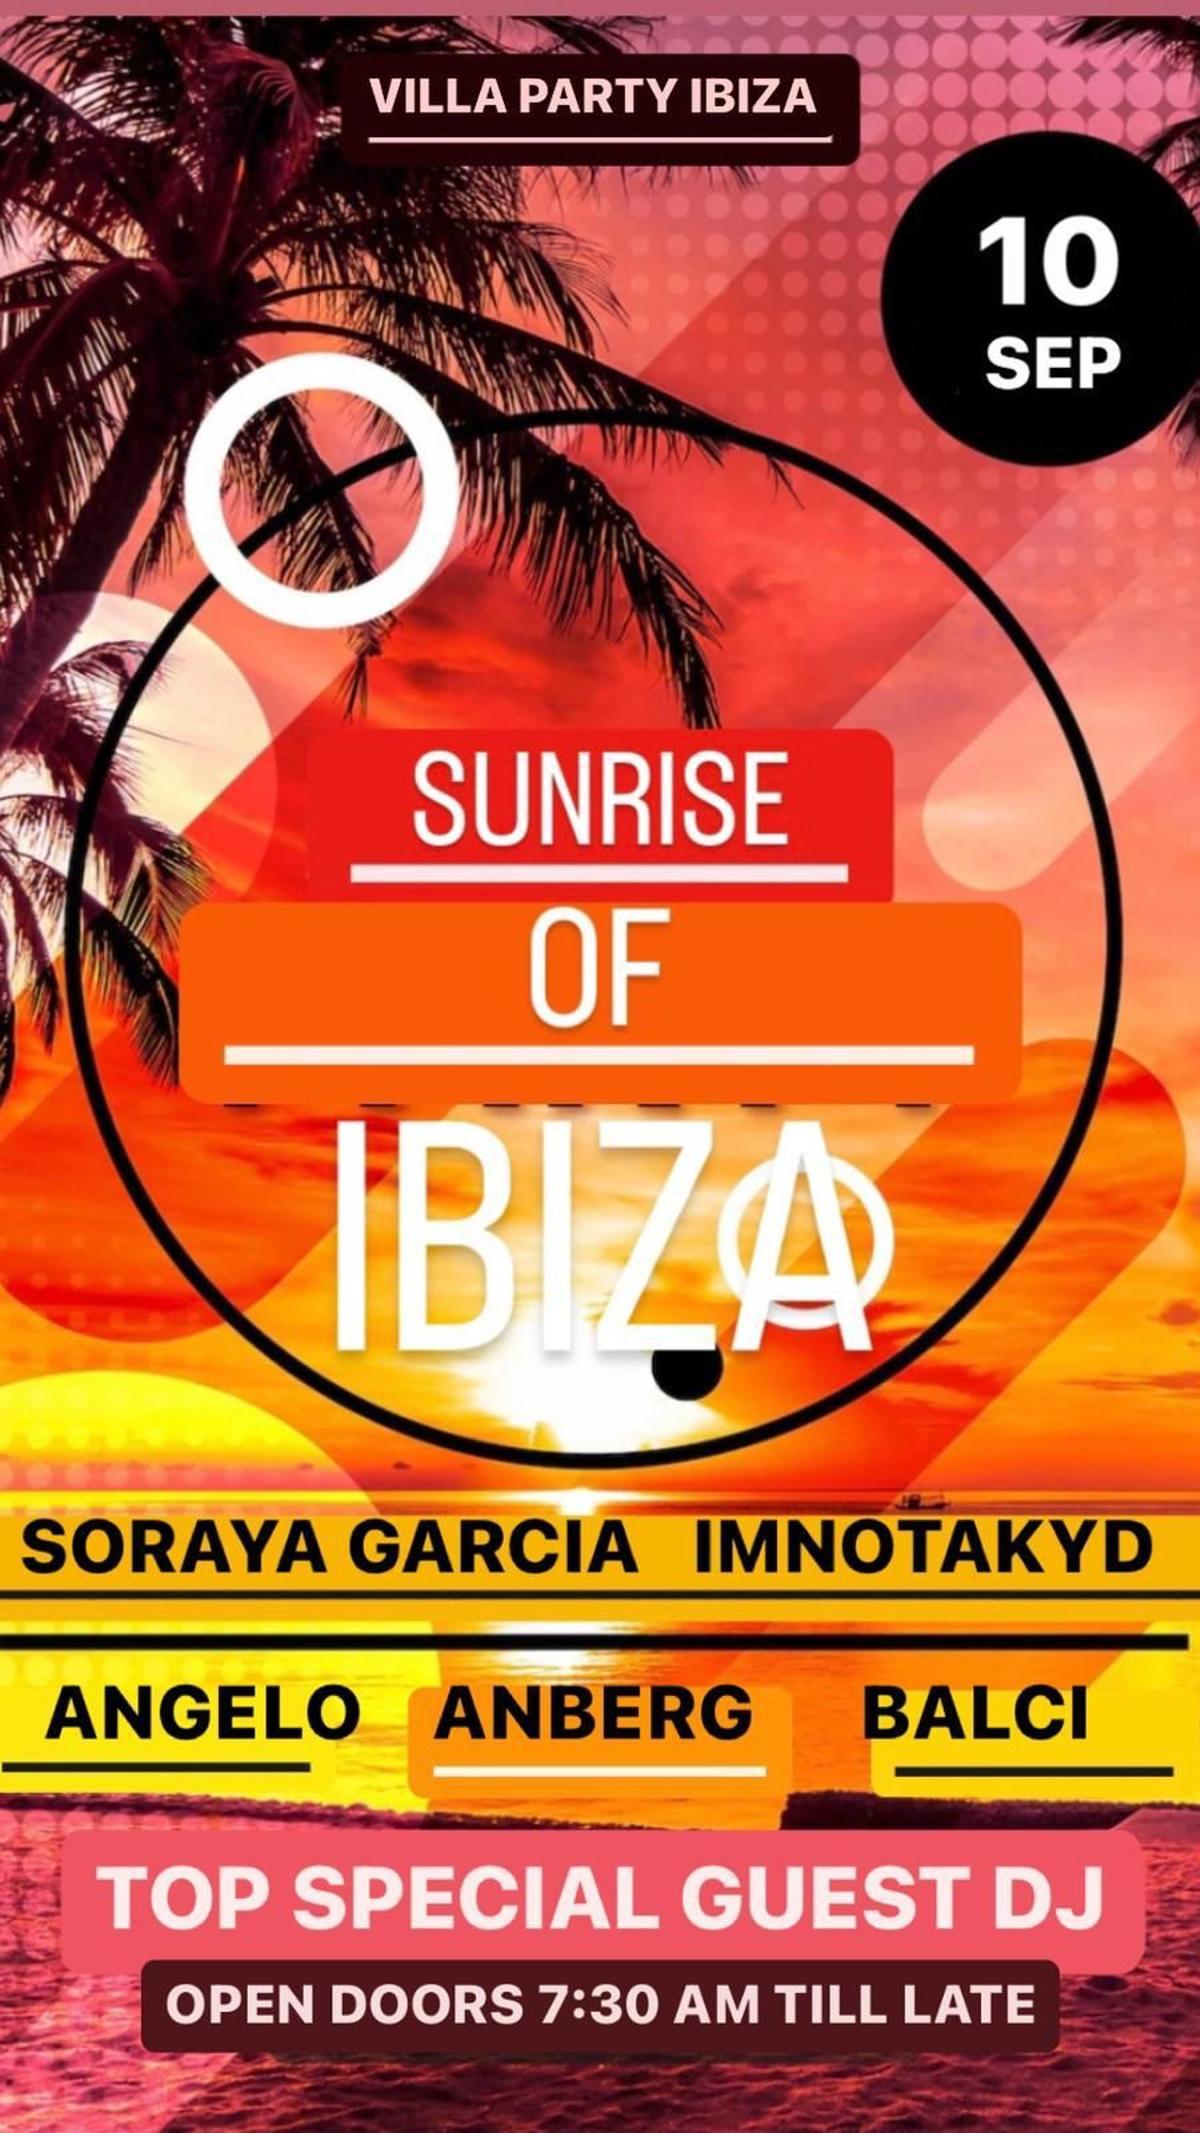 Imagen promocional de la fiesta 'Sunrise of Ibiza' en una villa el pasado domingo.